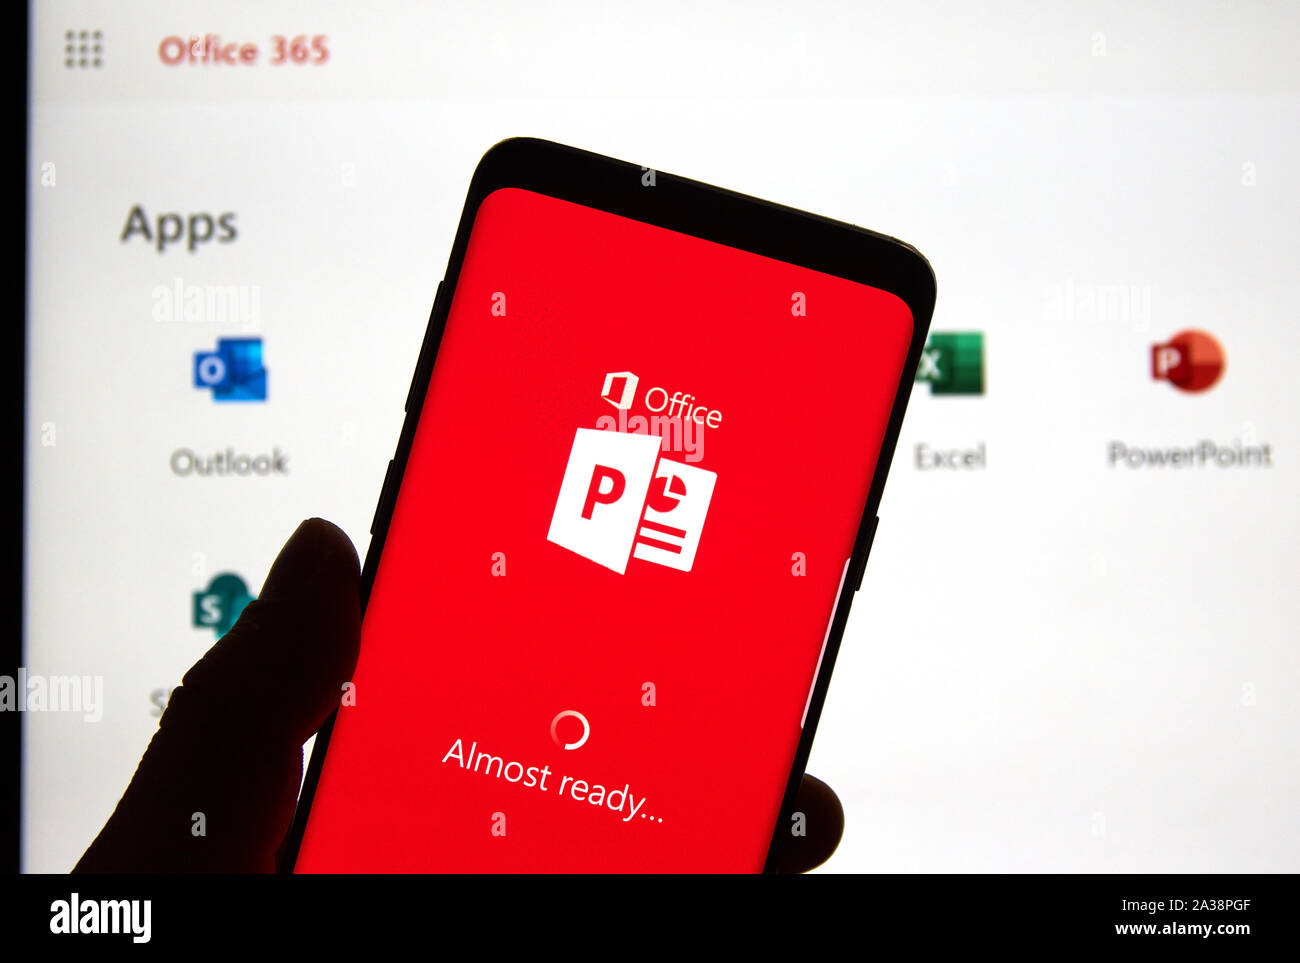 MONTREAL, Canadá - 24 de abril de 2019: un teléfono celular con el logotipo  de Microsoft PowerPoint y app a través de la pantalla de la laptop.  Microsoft Office es una familia